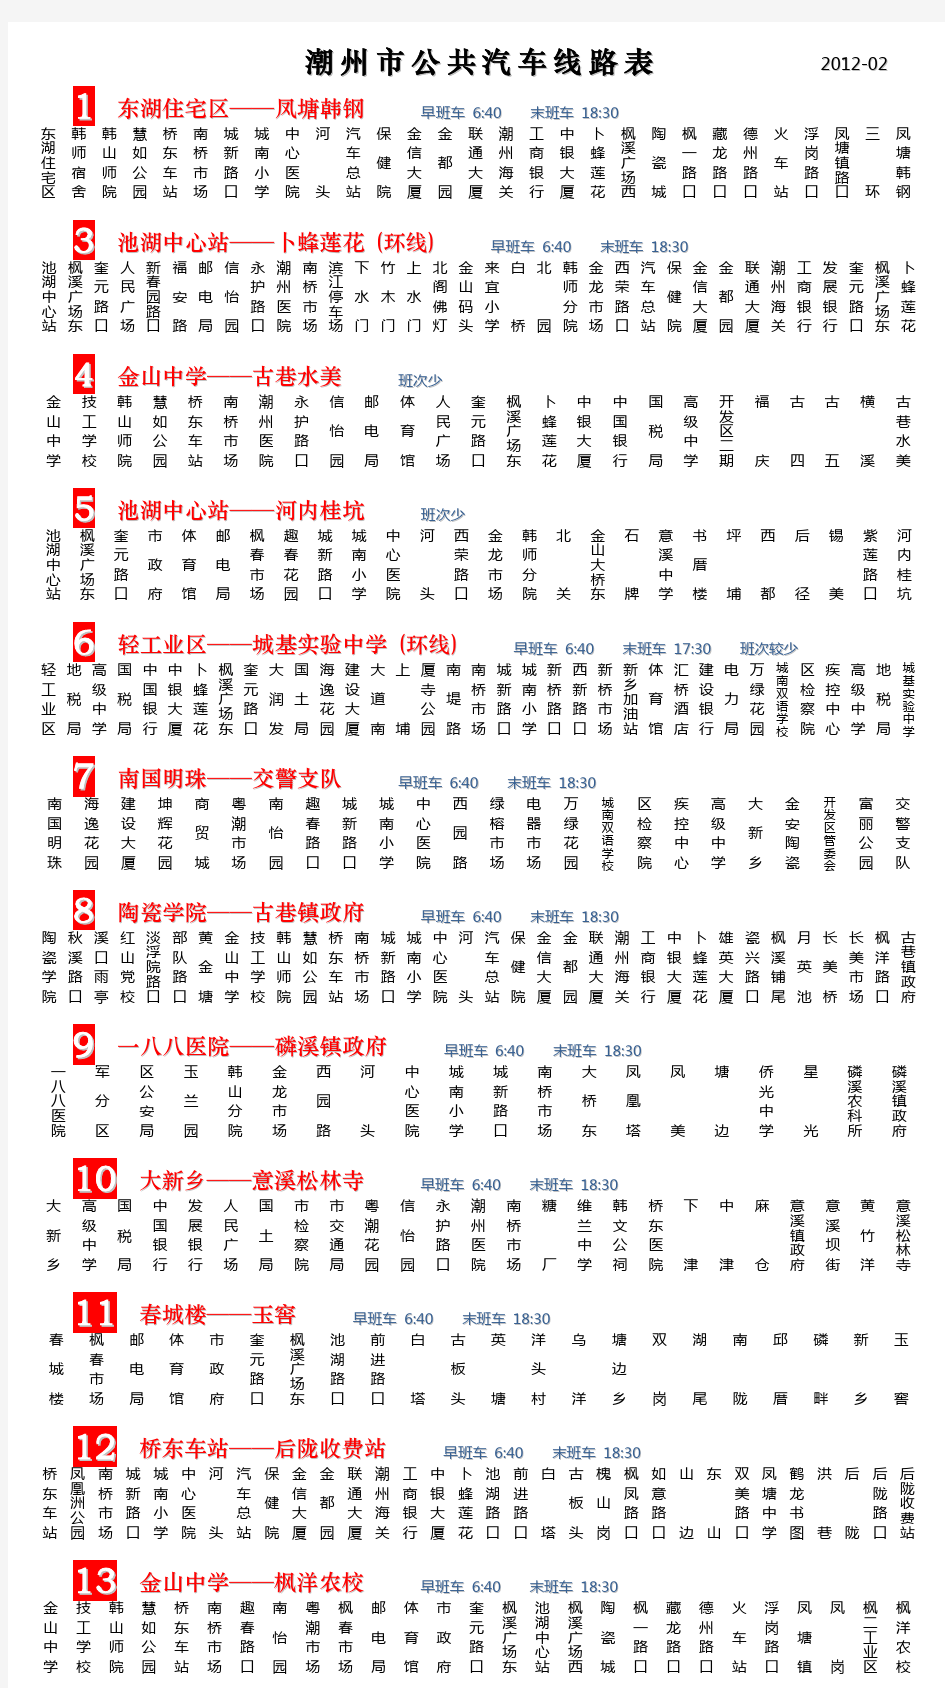 潮州市公交车线路表 (2012年2月更新)